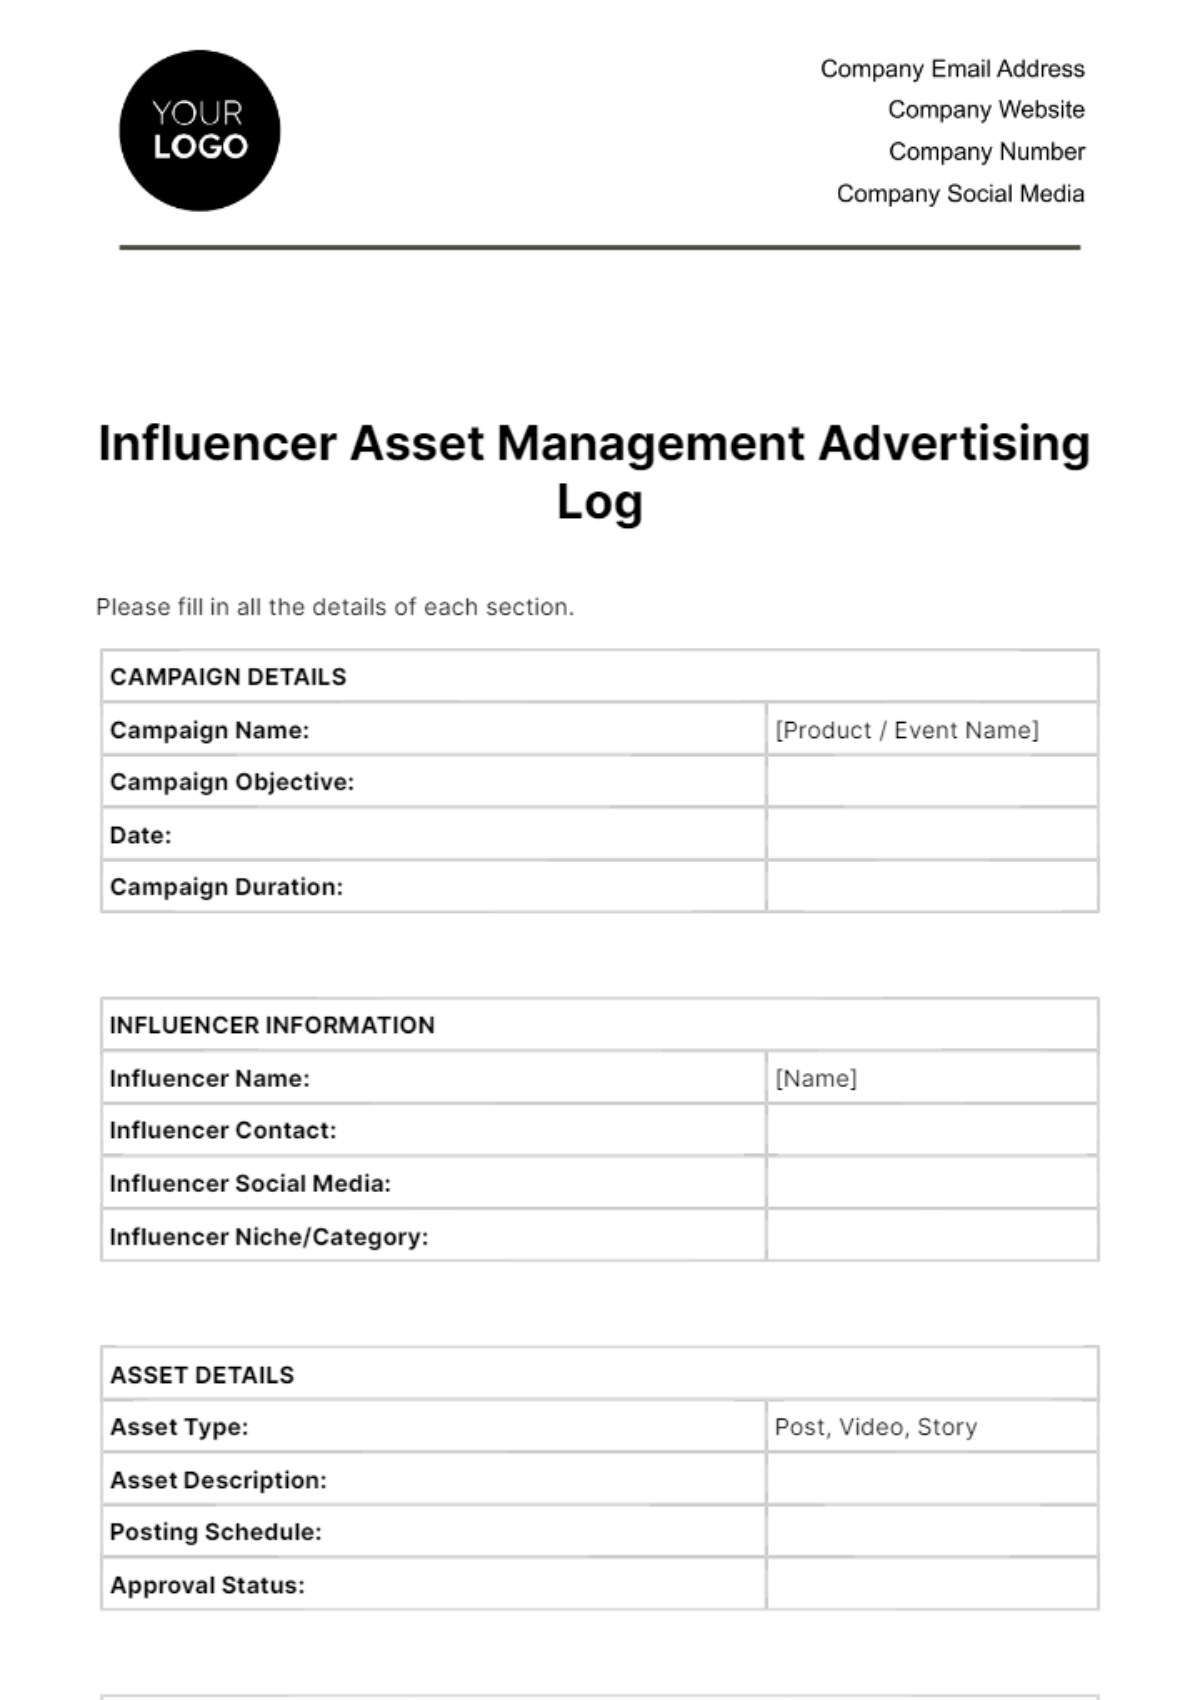 Influencer Asset Management Advertising Log Template